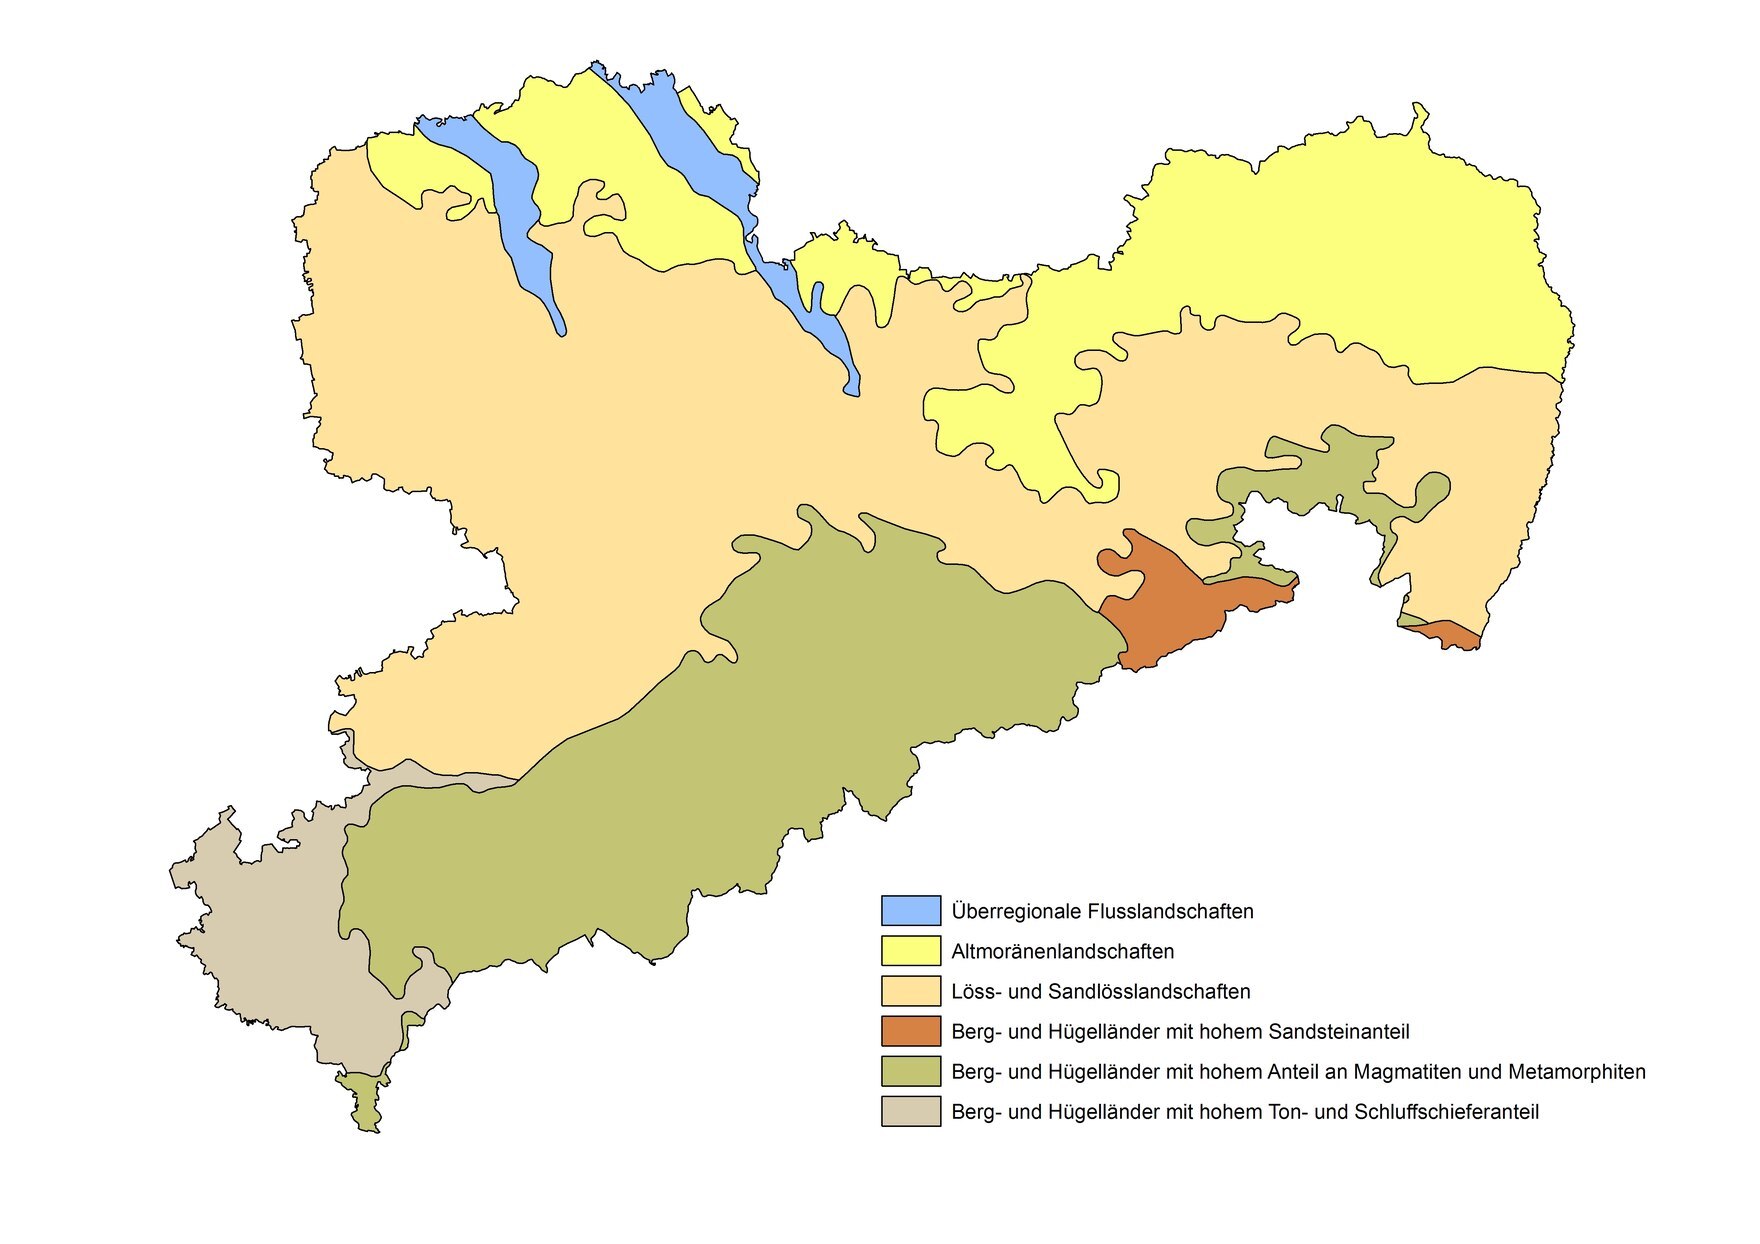 Das Bild zeigt die verschiedenen Bodebregionen im Freistaat Sachsen.